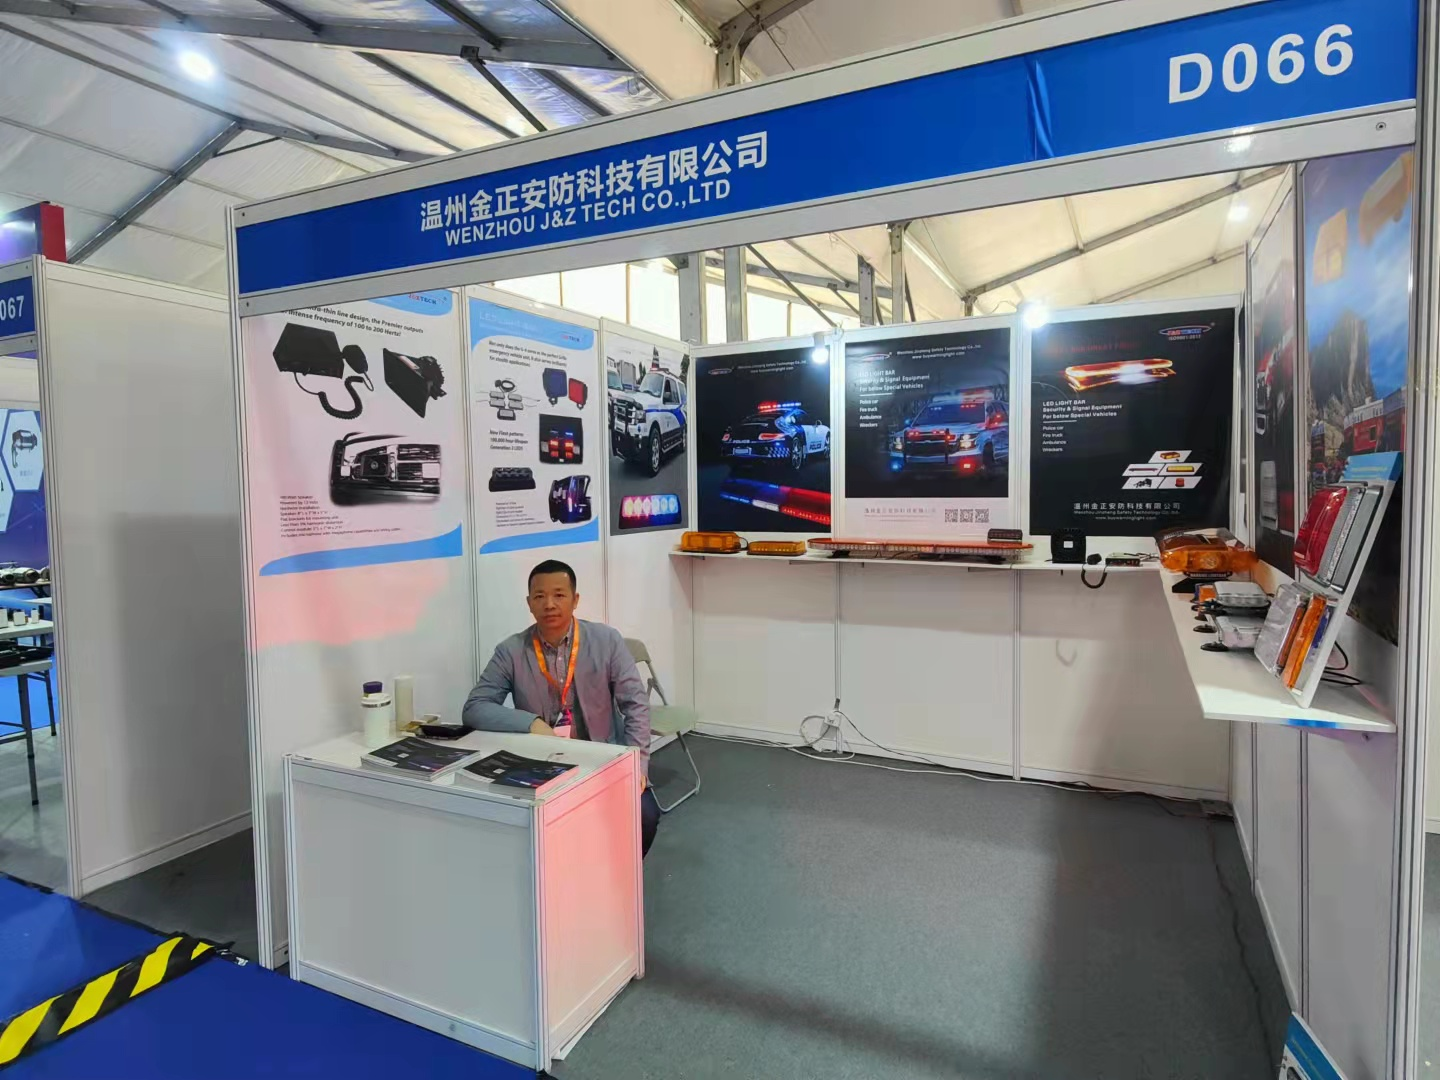 Buenas noticias, asistiremos a la Exposición de piezas de automóviles y motores de Yiwu.